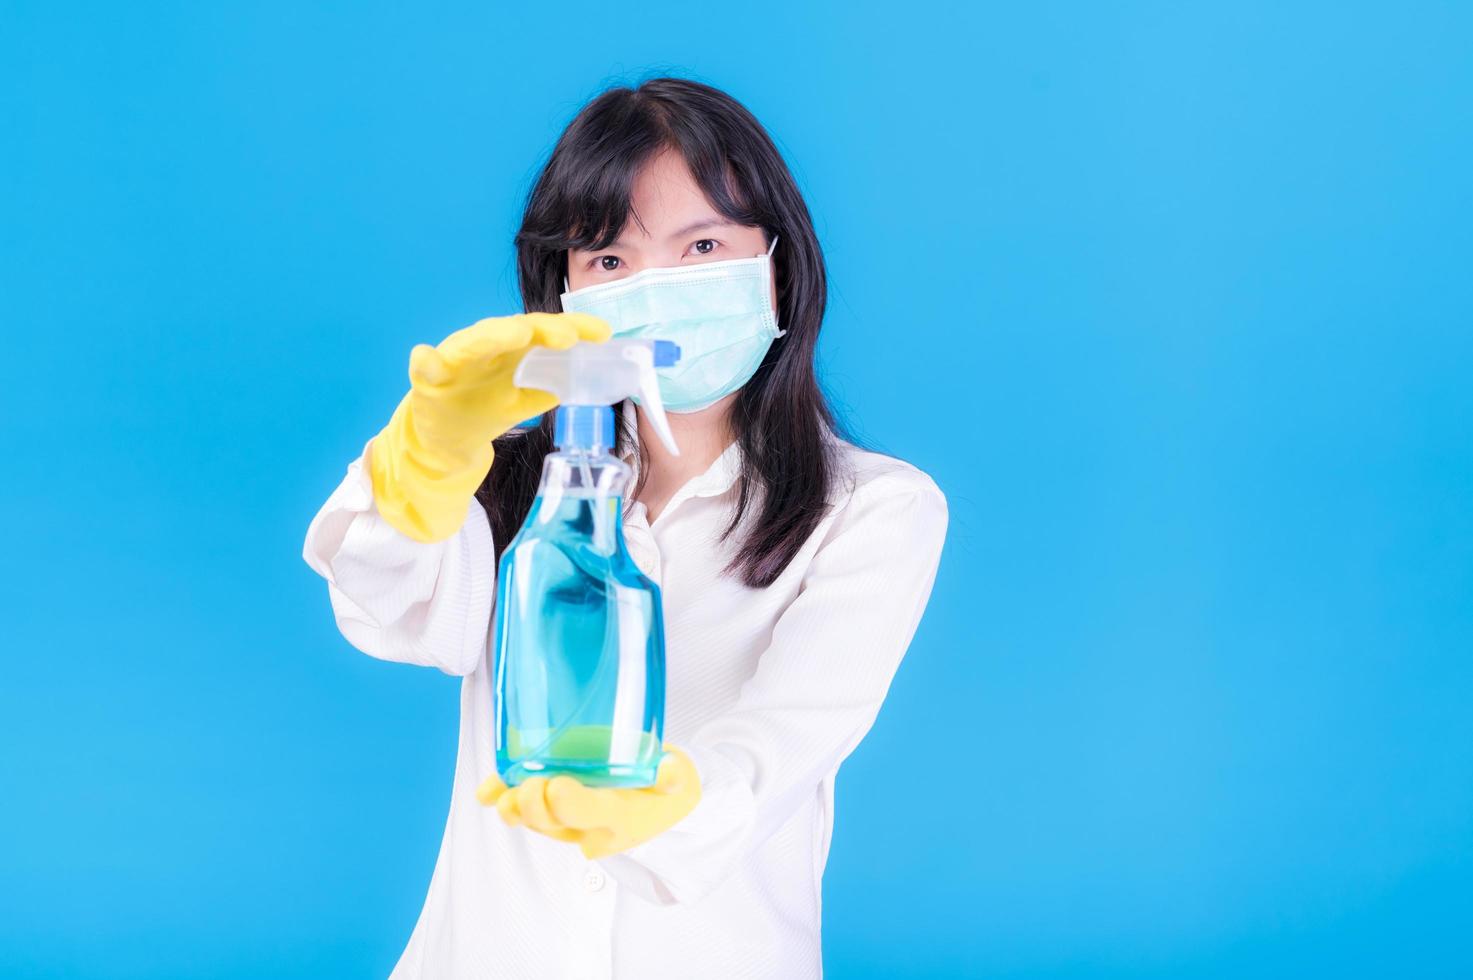 asiatische frauen müssen masken verwenden, um eine staubbelastung und eine infektion durch viren zu verhindern, die sich in der luft ausbreiten, indem sie mit alkoholspray gereinigt werden foto